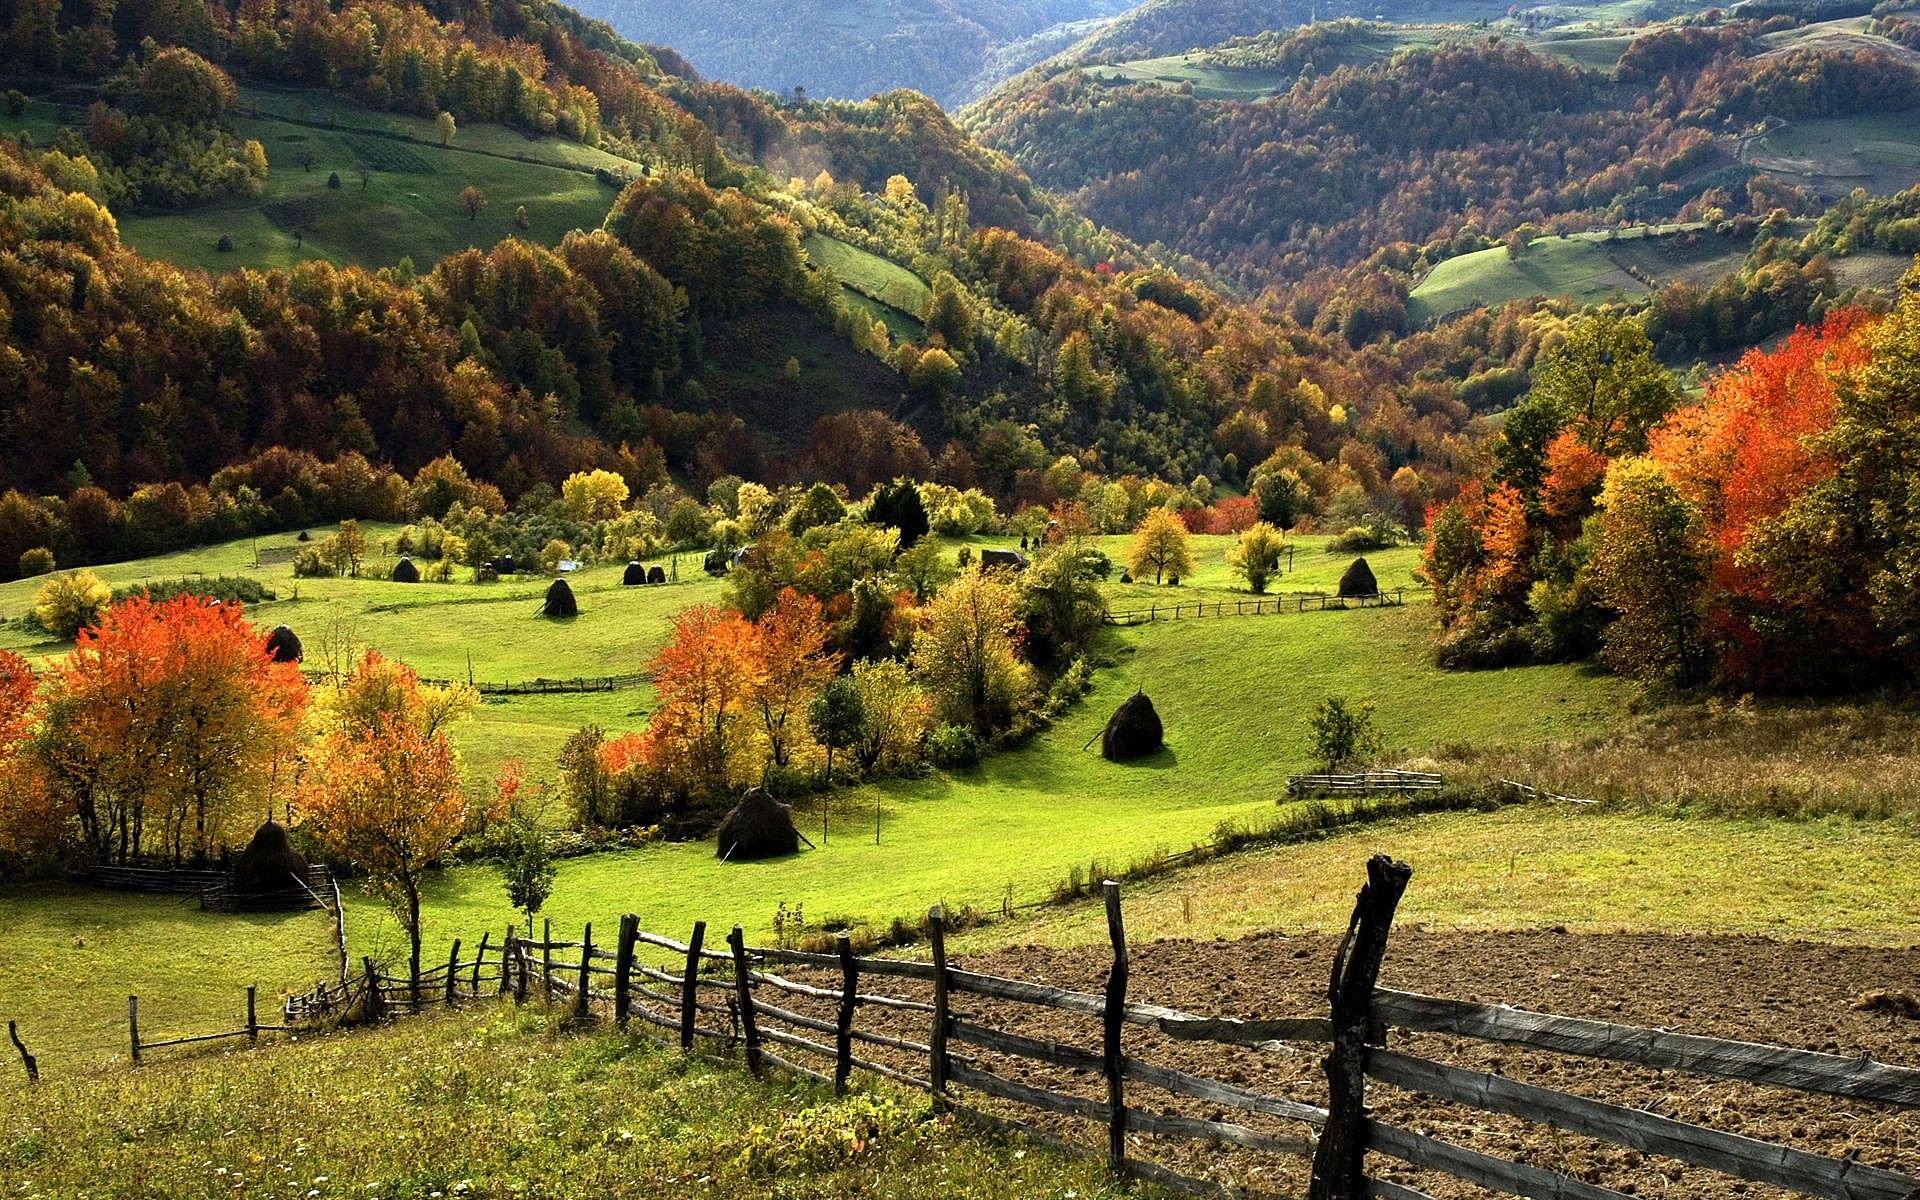 пейзажи пейзаж природа дерево сельской местности осень на открытом воздухе сельских древесины сельское хозяйство трава холм живописный путешествия возделываемые земли пастбище небо ферма горы долина mounatins холмы